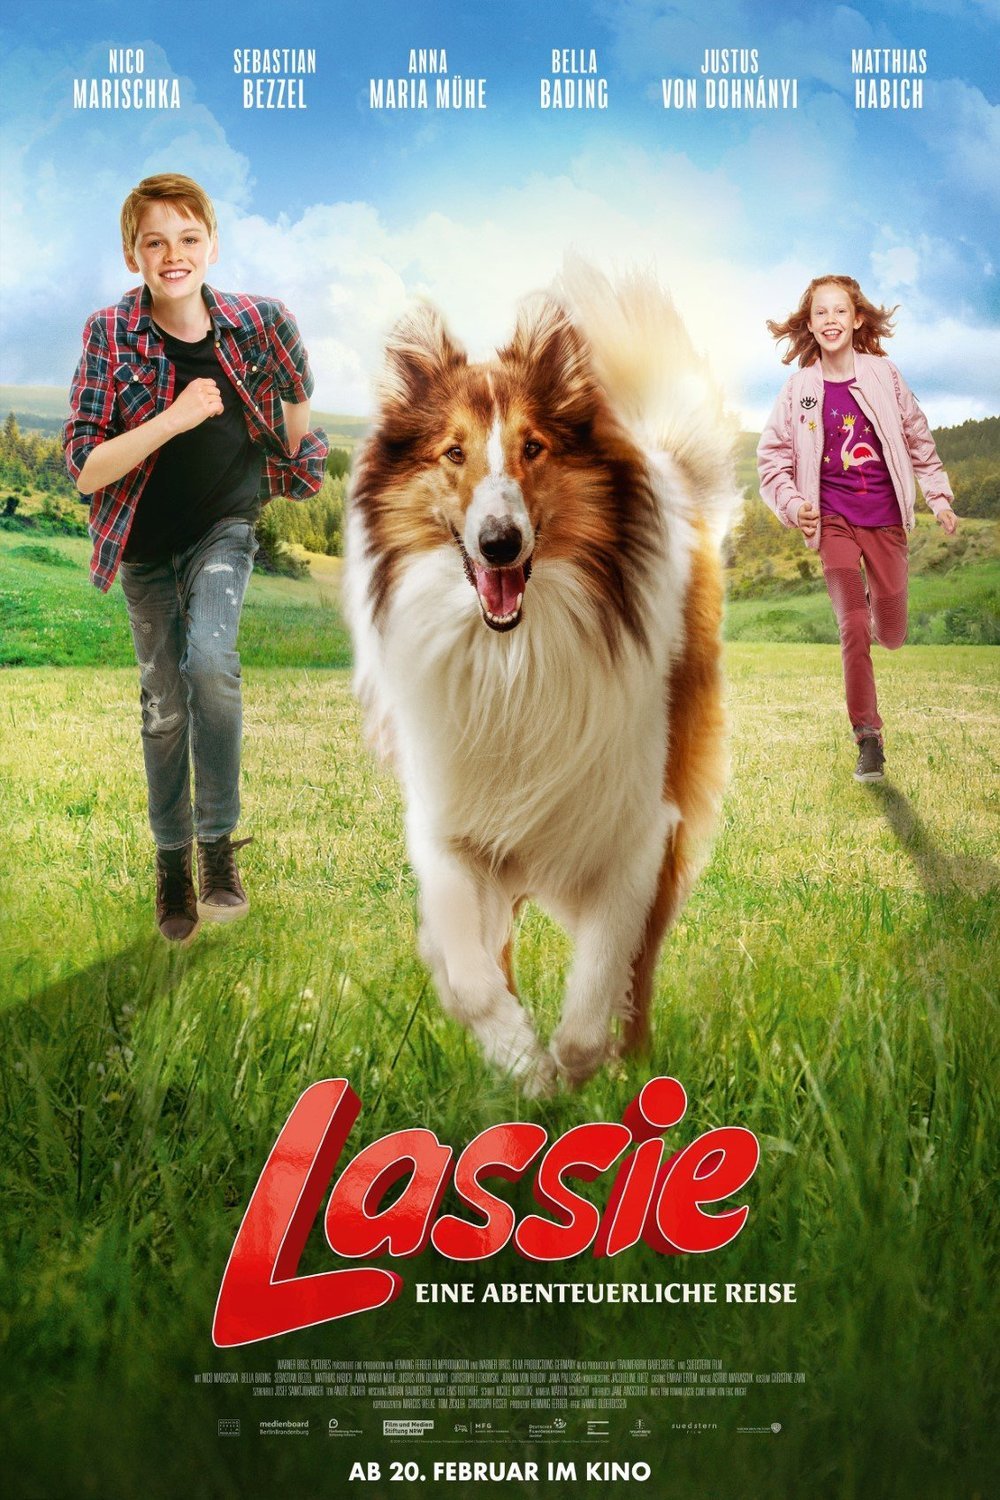 German poster of the movie Lassie - la route de l'aventure